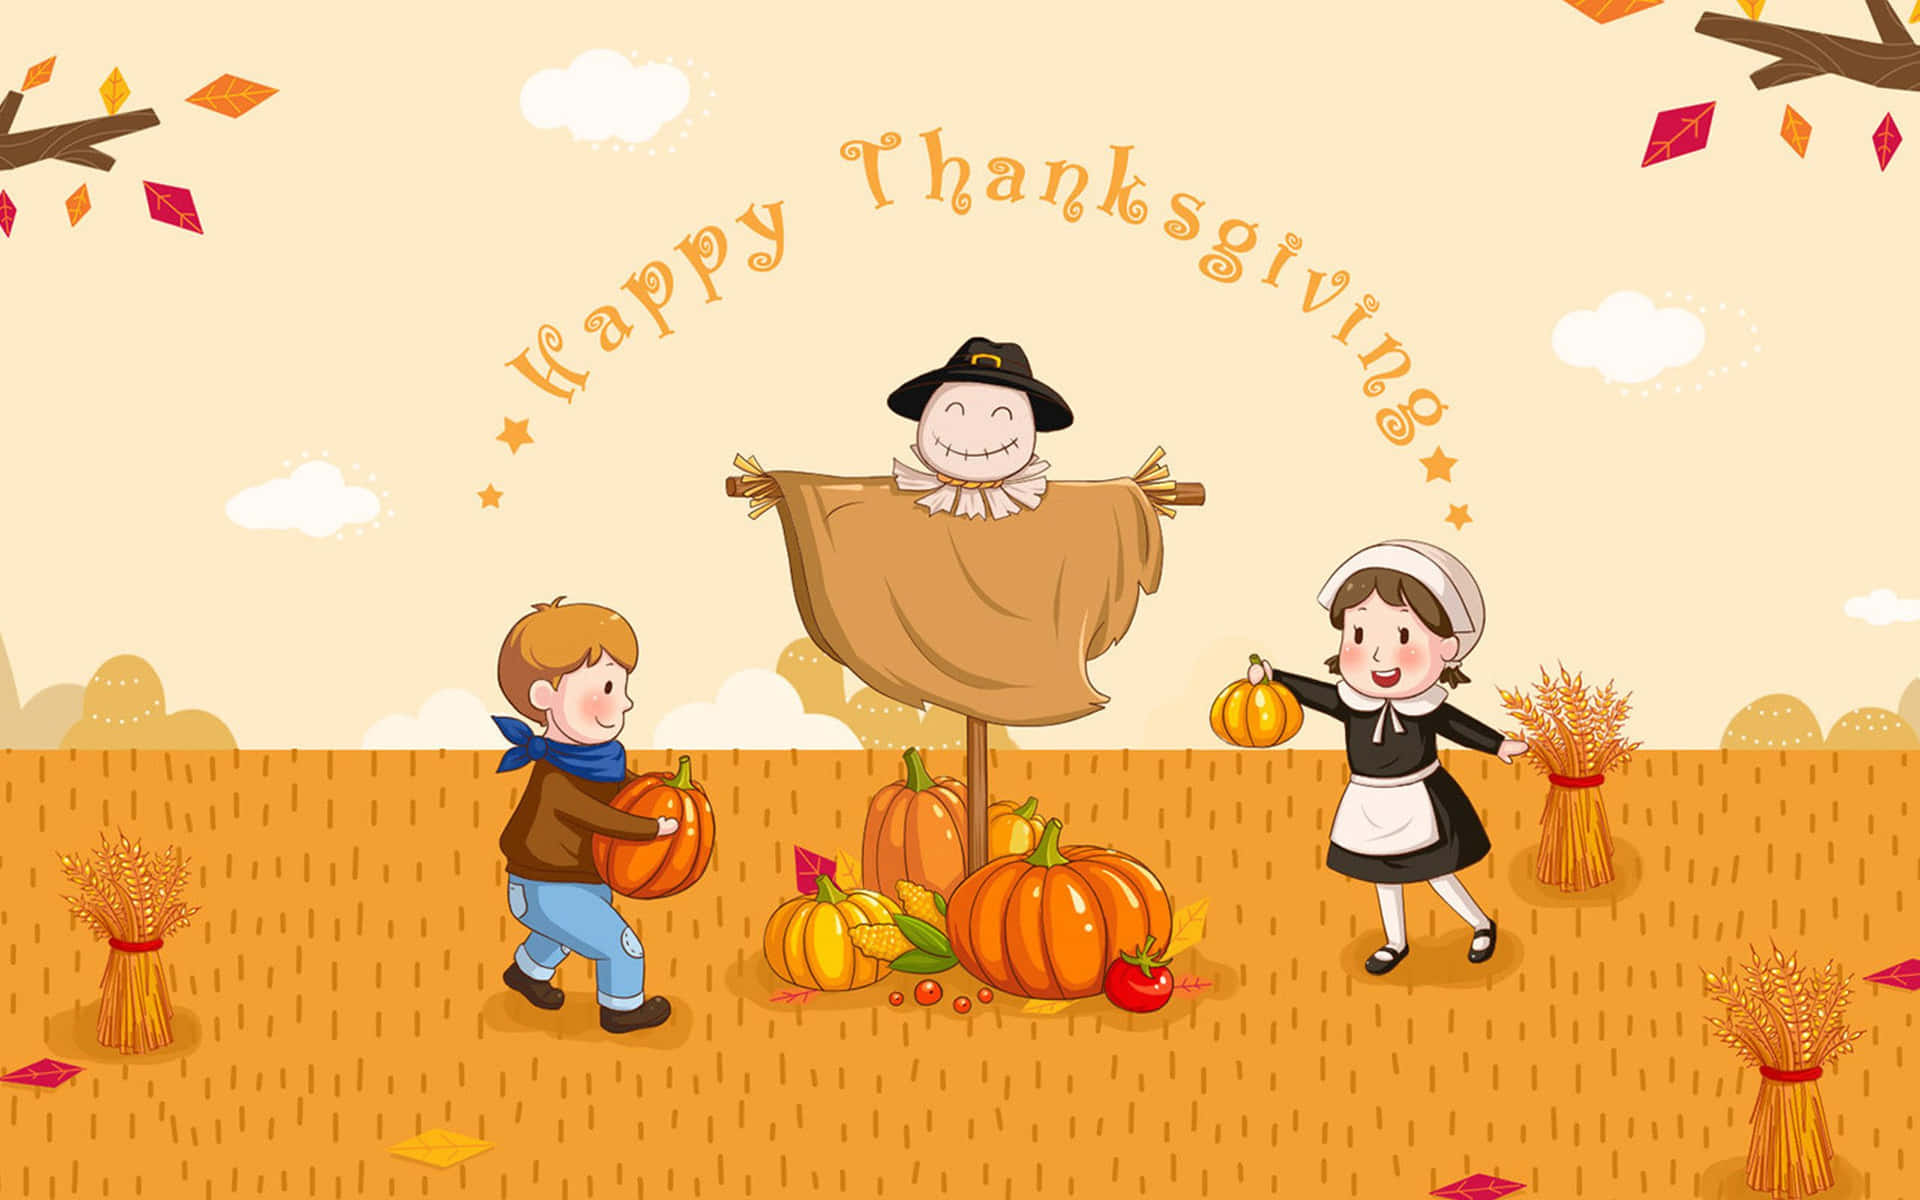 Lad os takke for endnu et Thanksgiving! Wallpaper